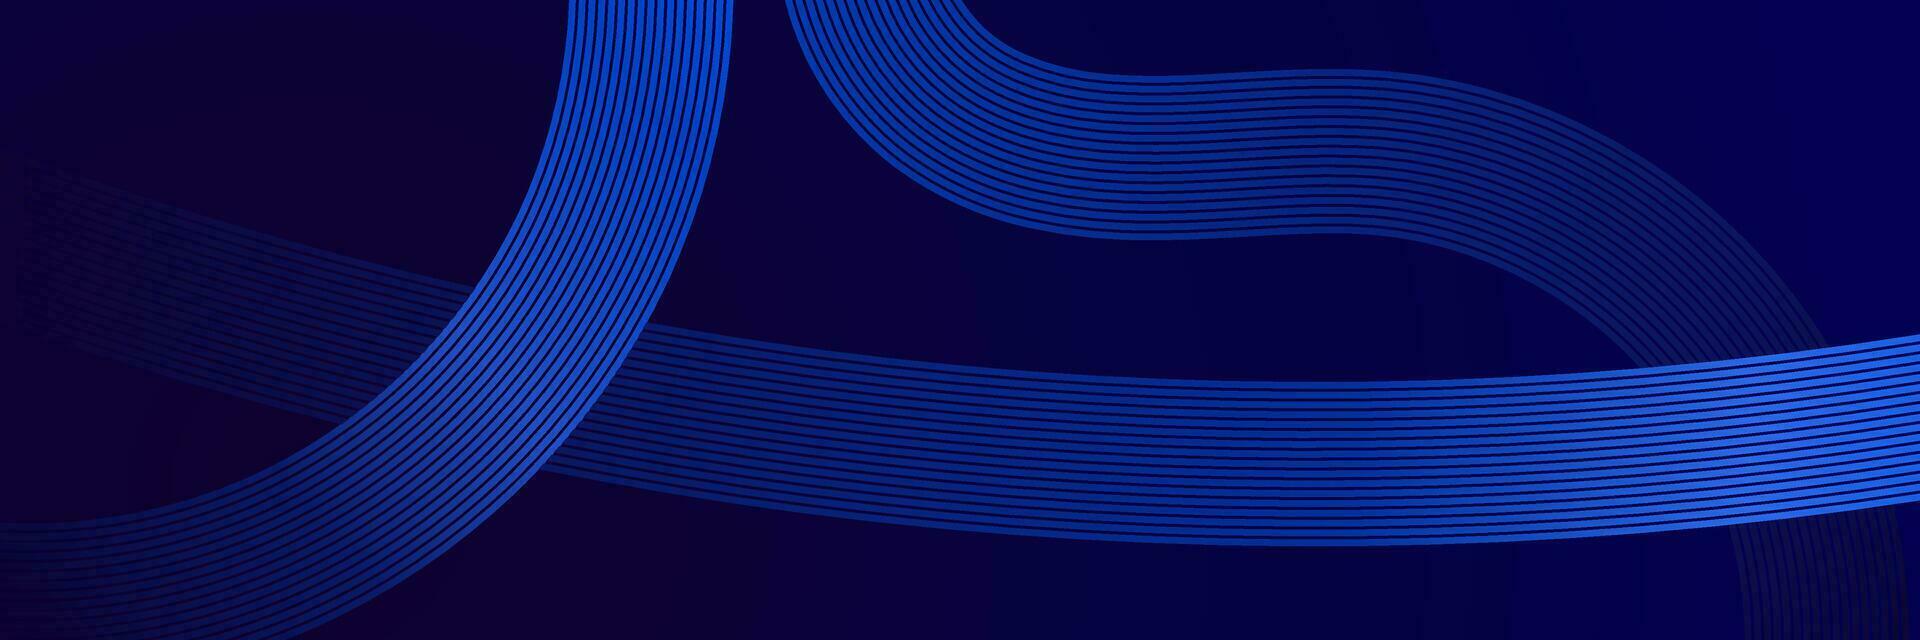 abstracte blauwe achtergrond met lijnen vector